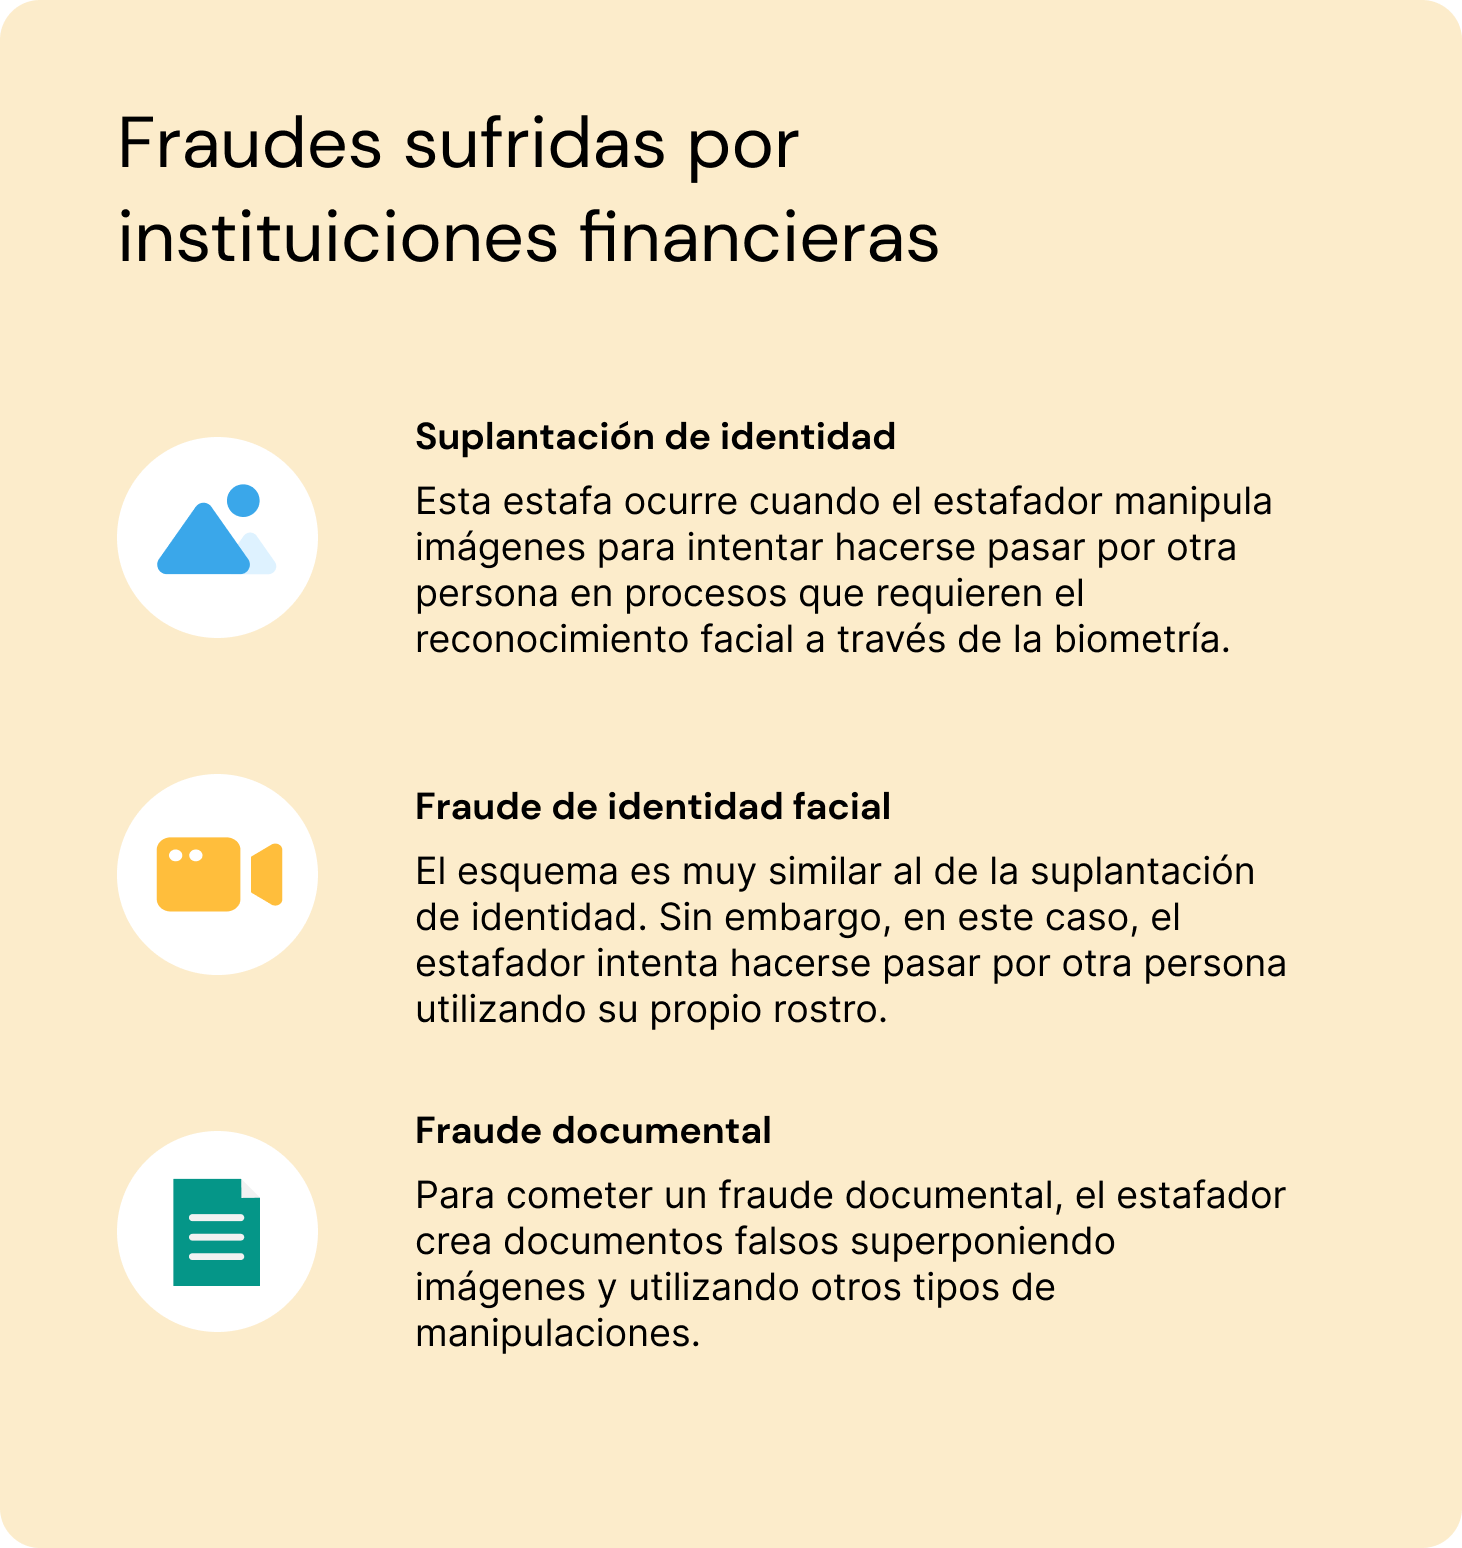 explicación de 3 tipos de fraude por parte de instituciones financieras (suplantación de identidad, fraude de identificación facial y fraude de documentos)